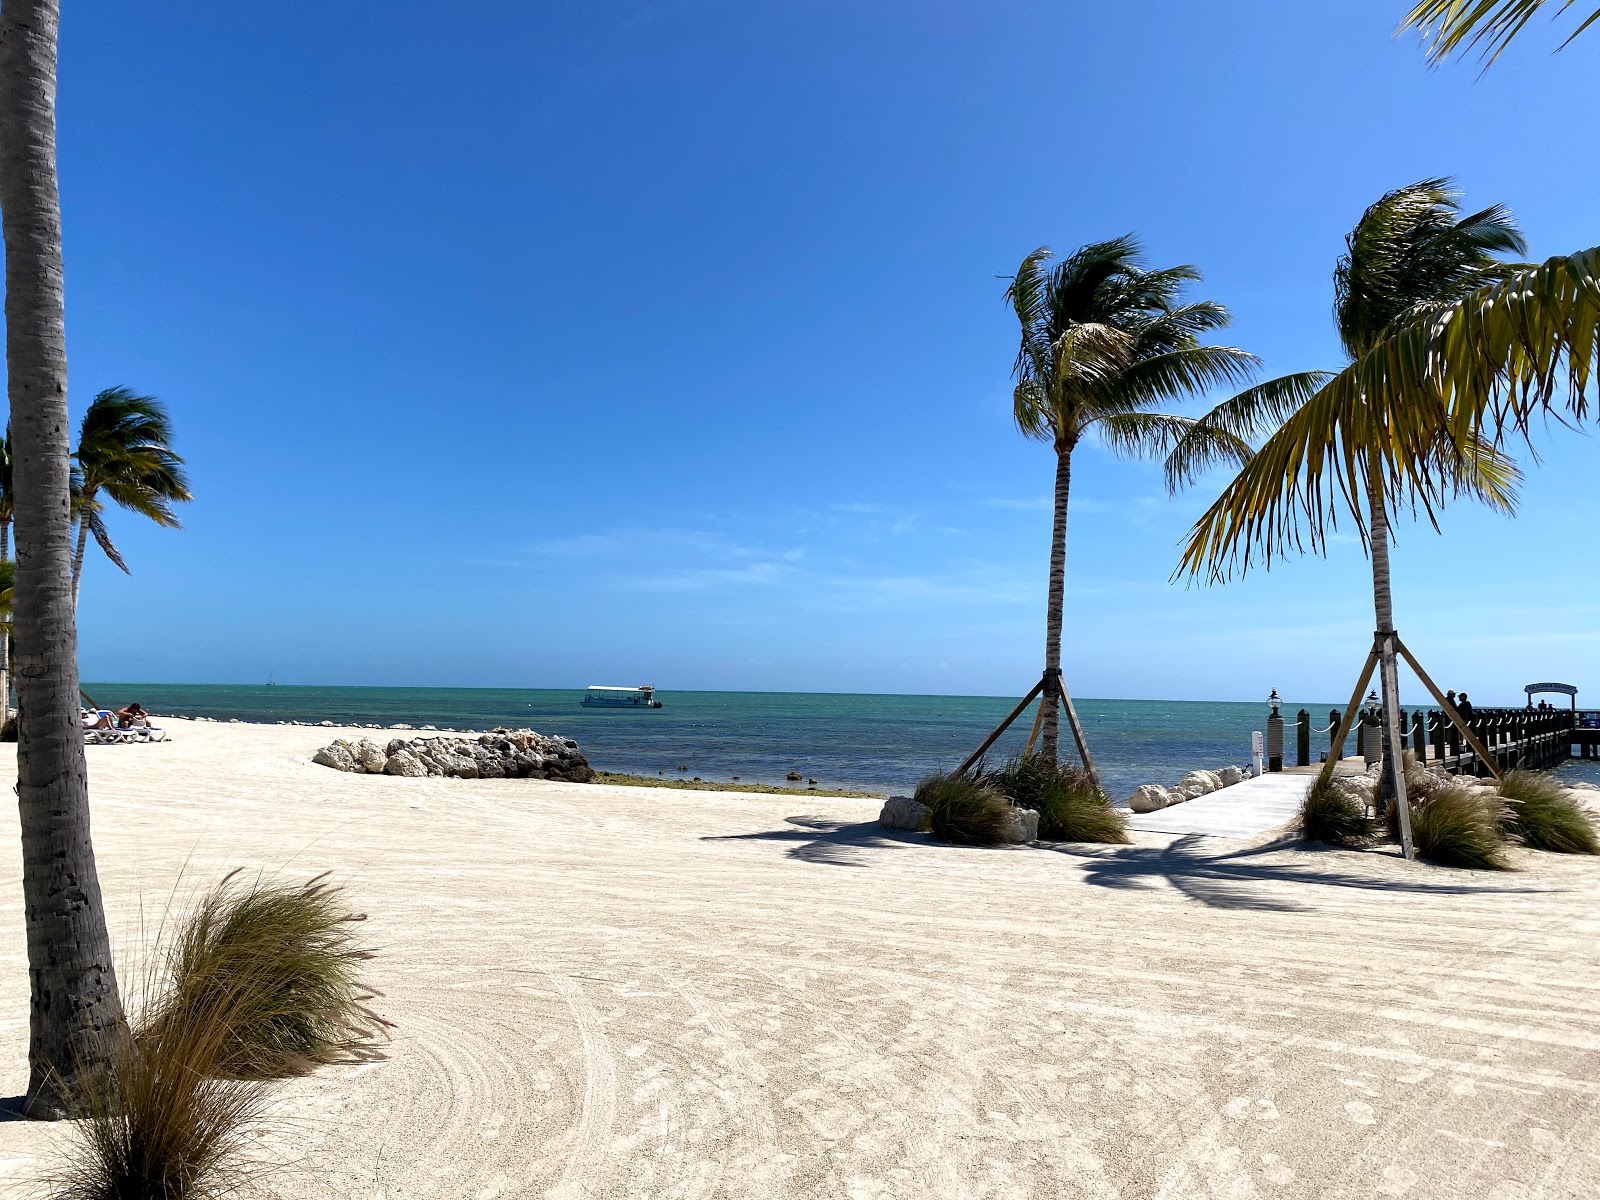 Photo de Islander beach - endroit populaire parmi les connaisseurs de la détente